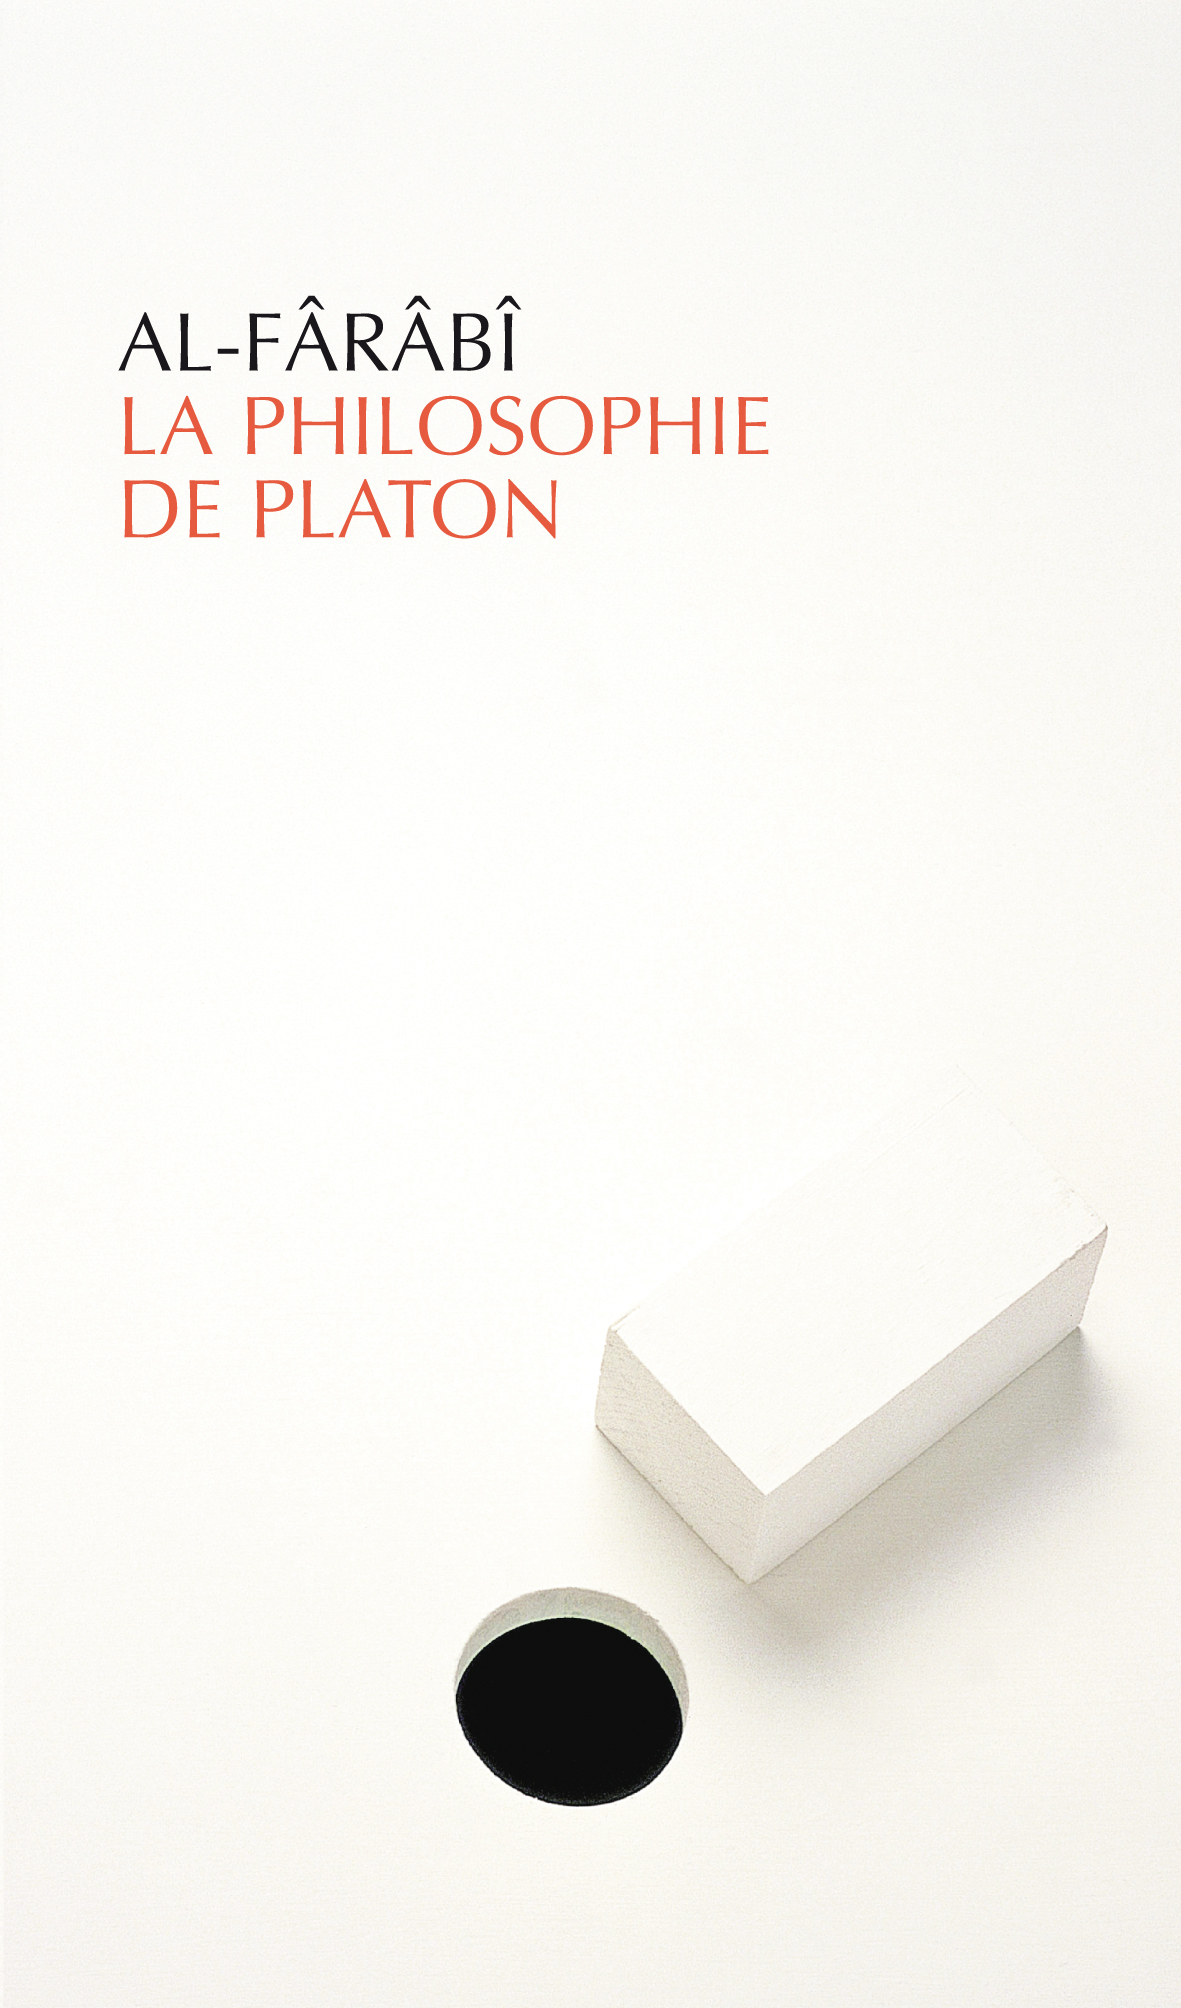 La Philosophie de Platon